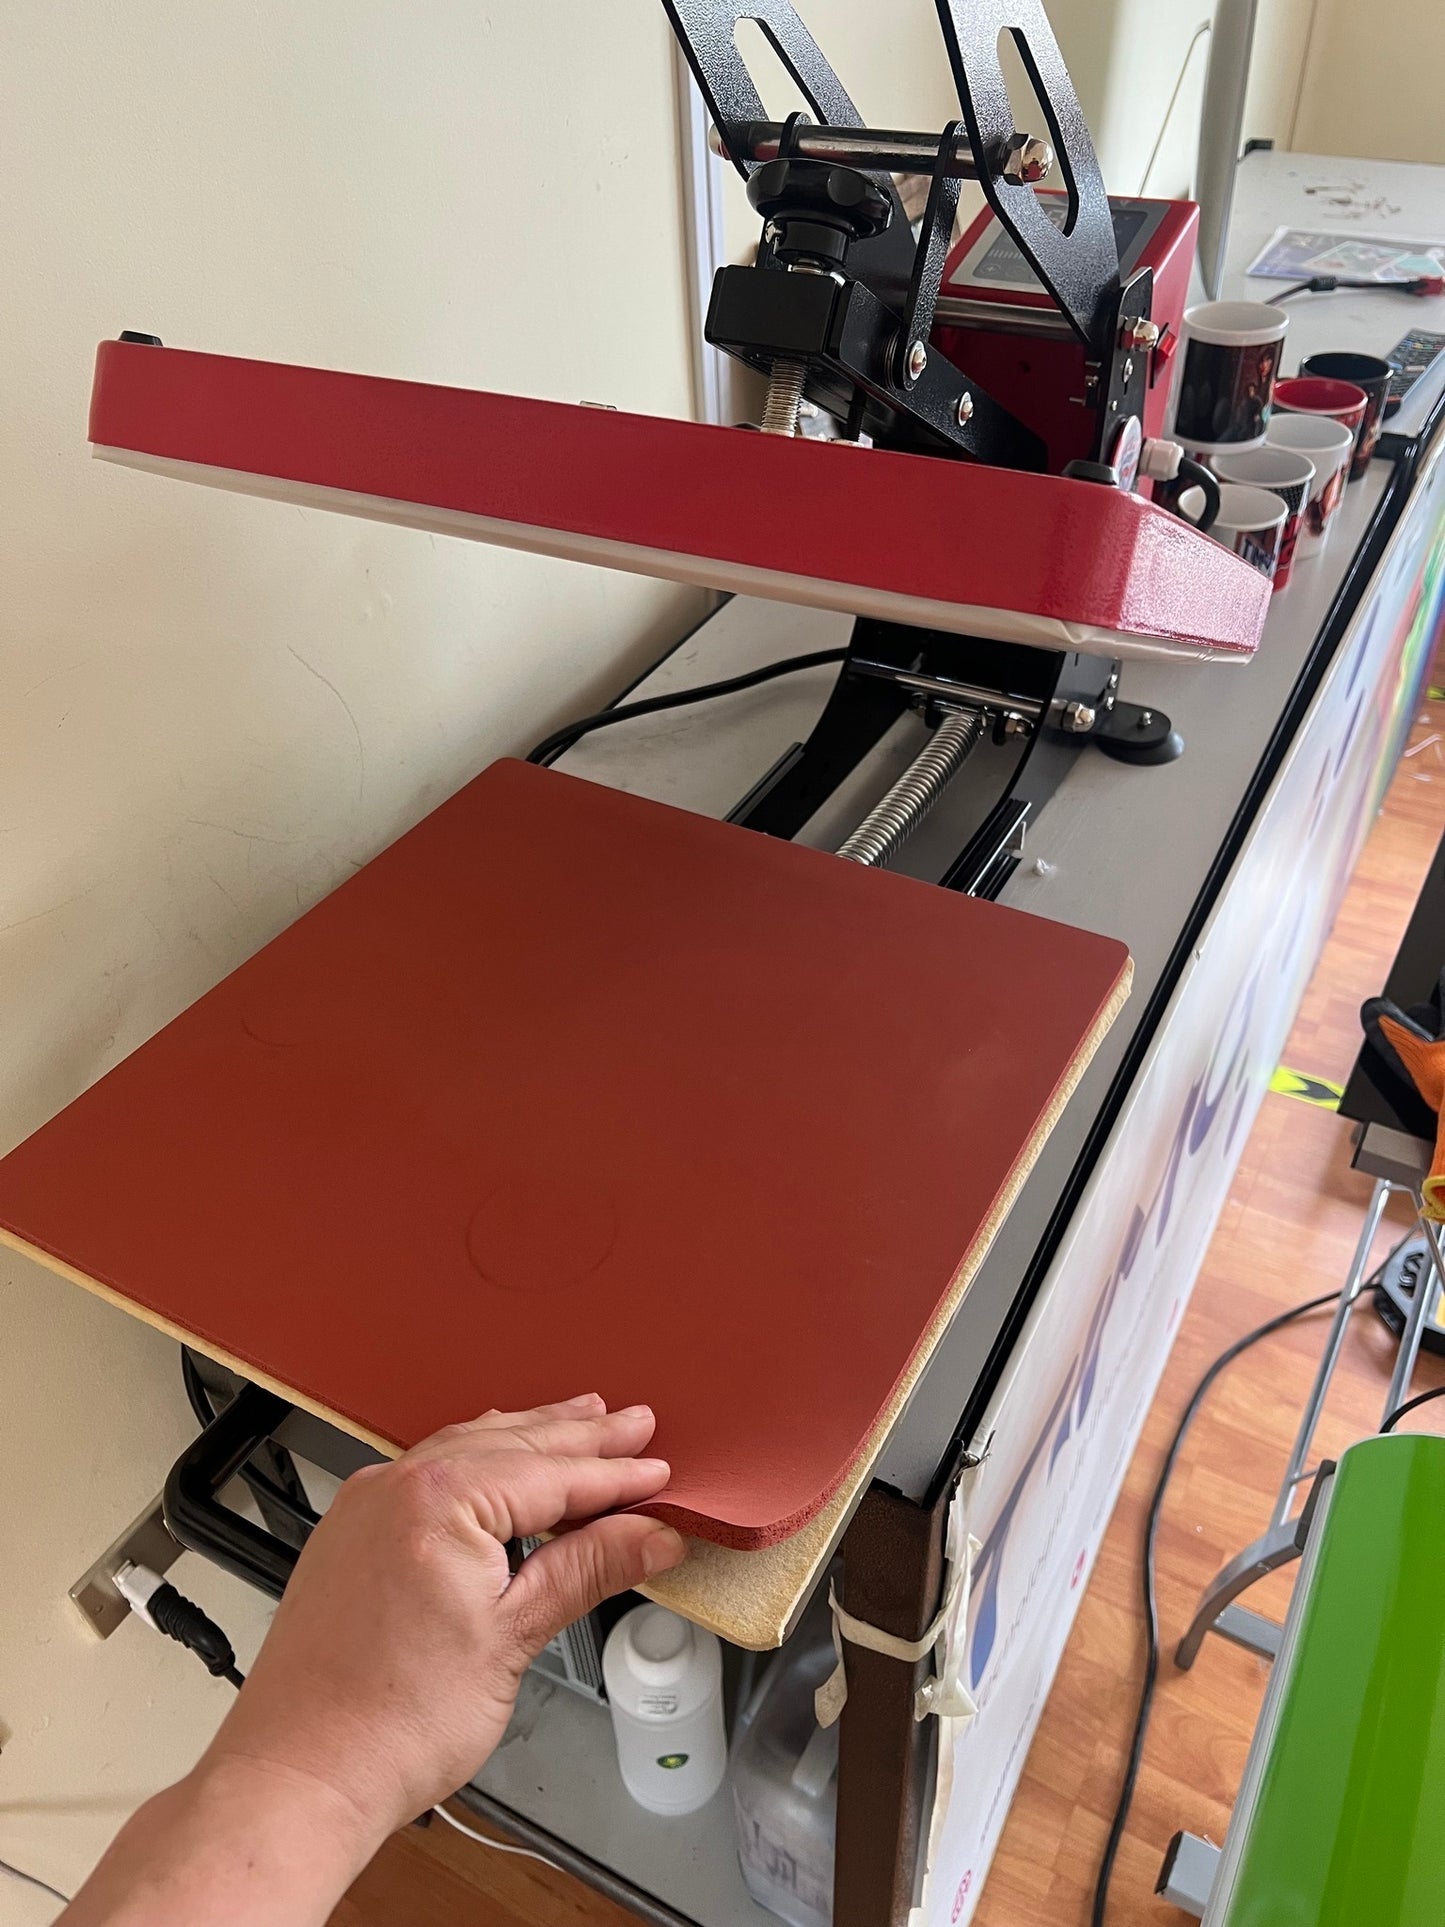 Base de silicona roja para estampadoras planas, repuesto, diferentes medidas